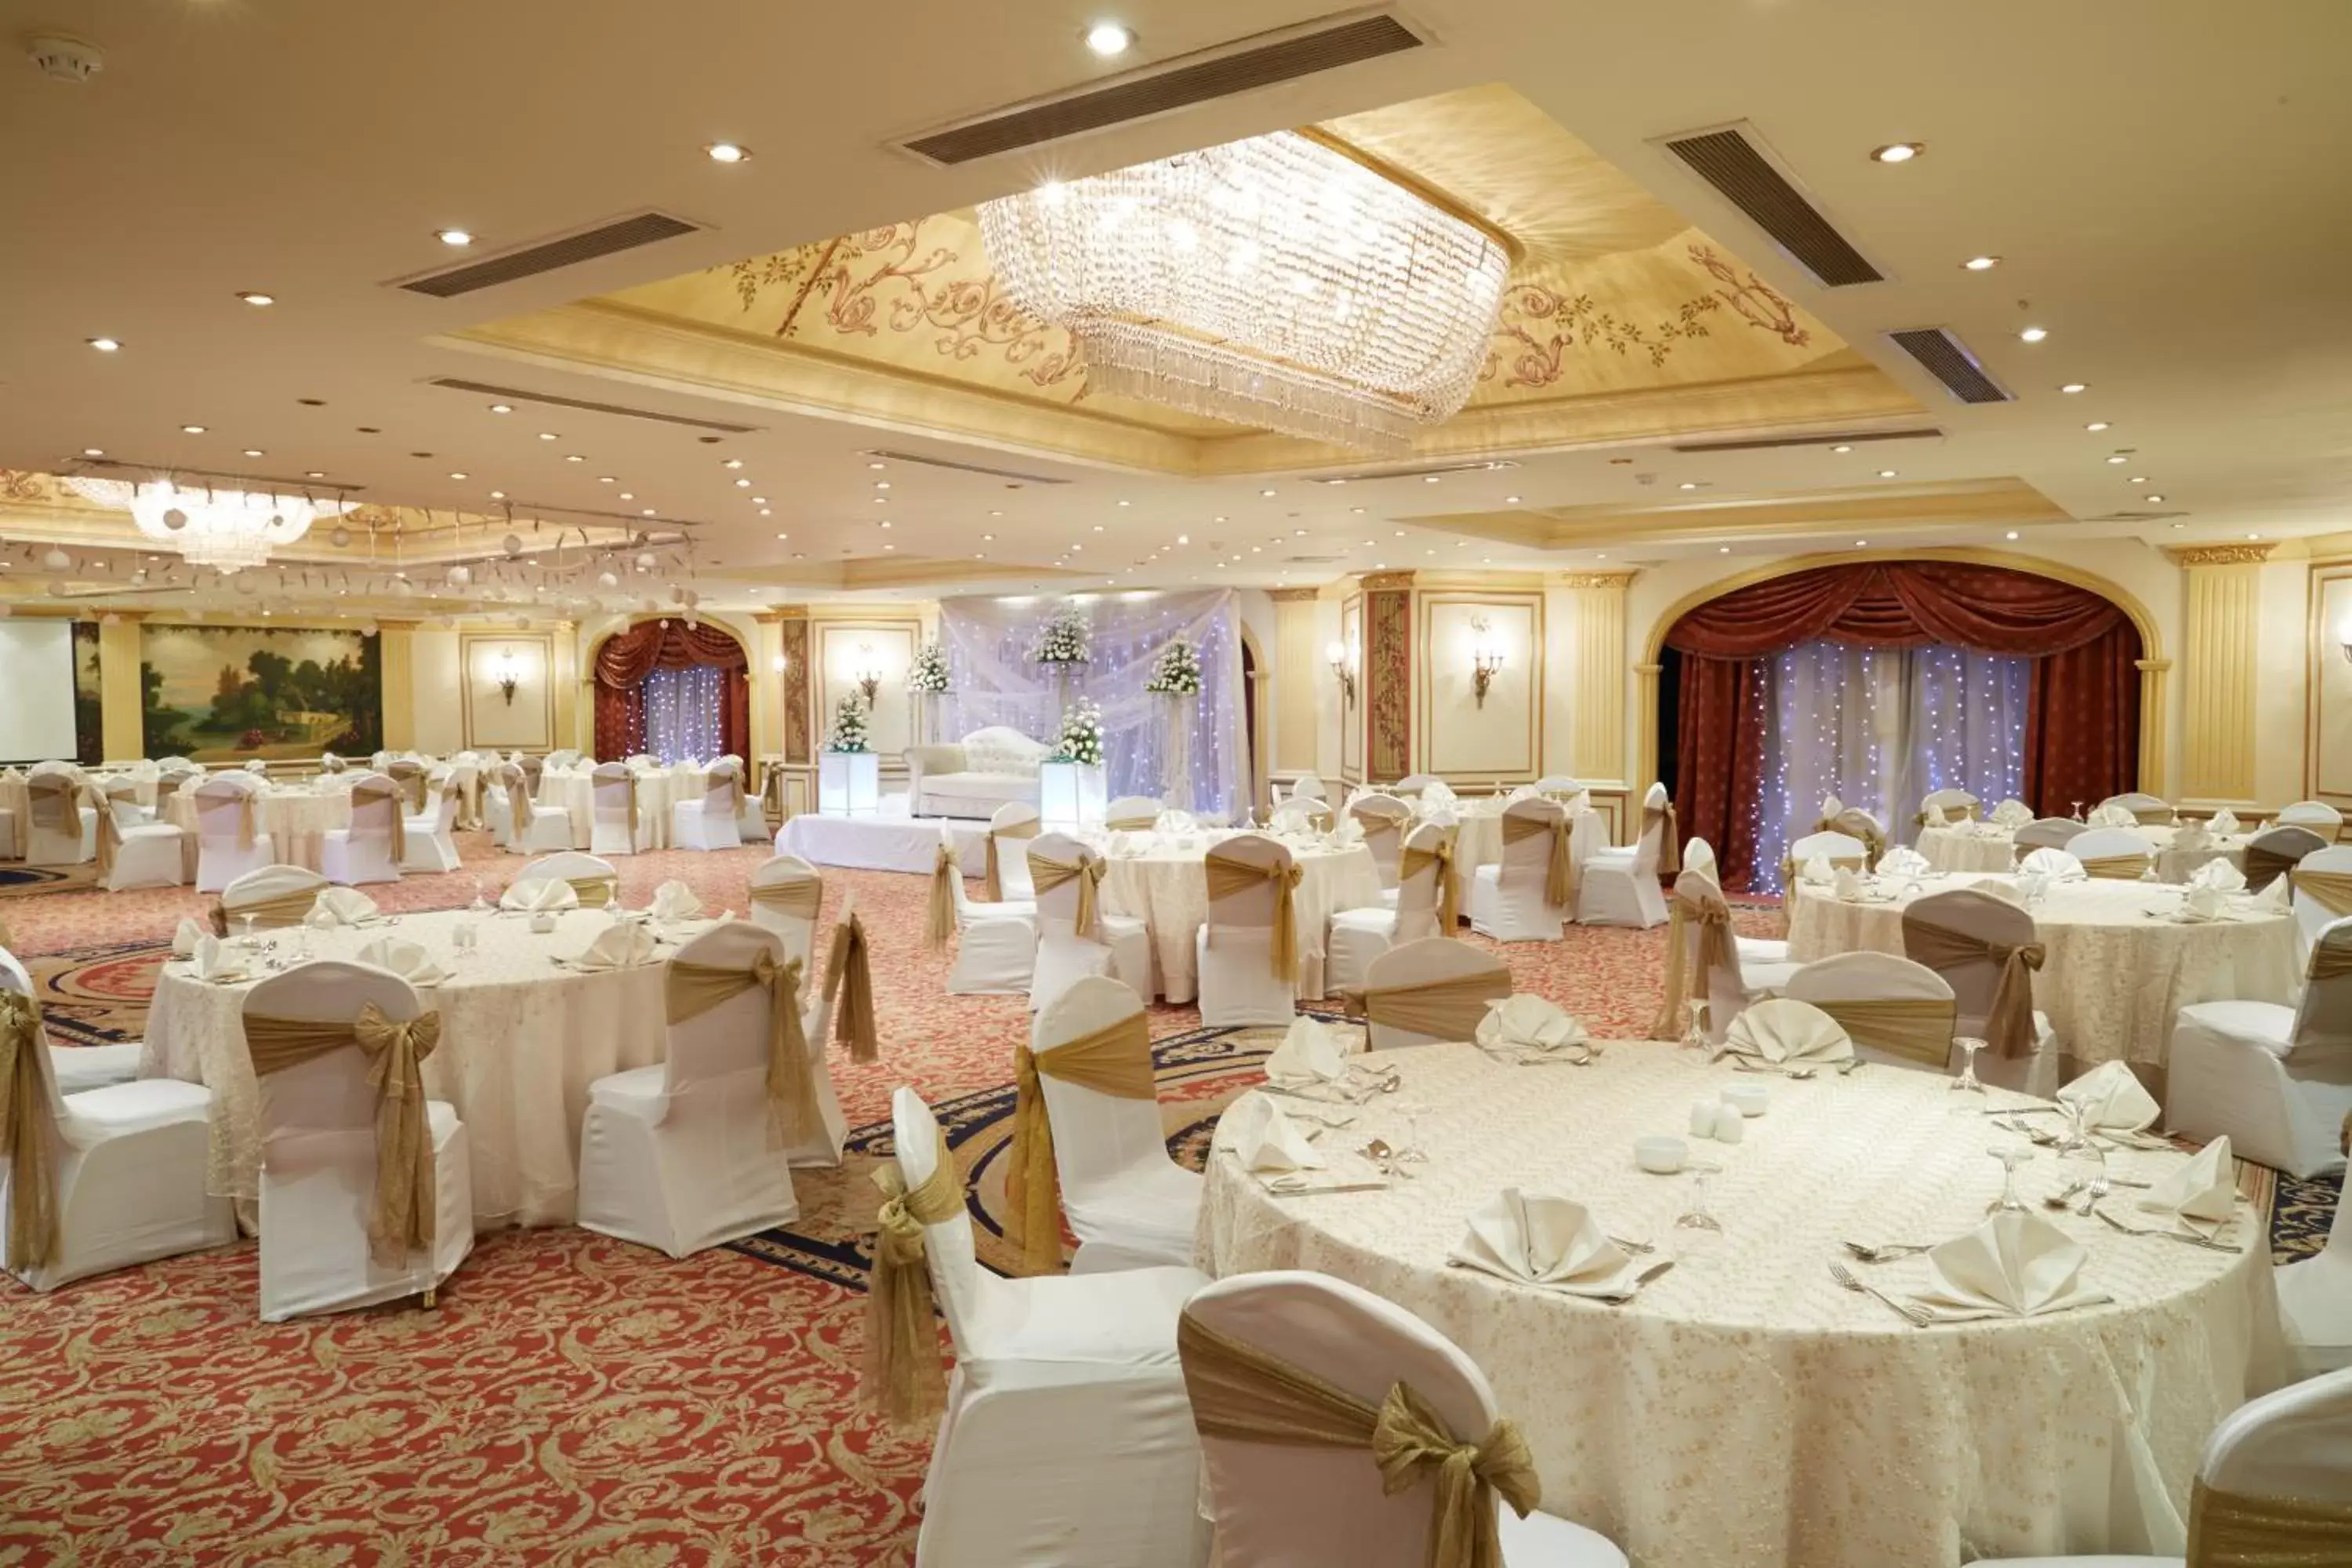 Banquet/Function facilities, Banquet Facilities in Pyramisa Suites Hotel Cairo